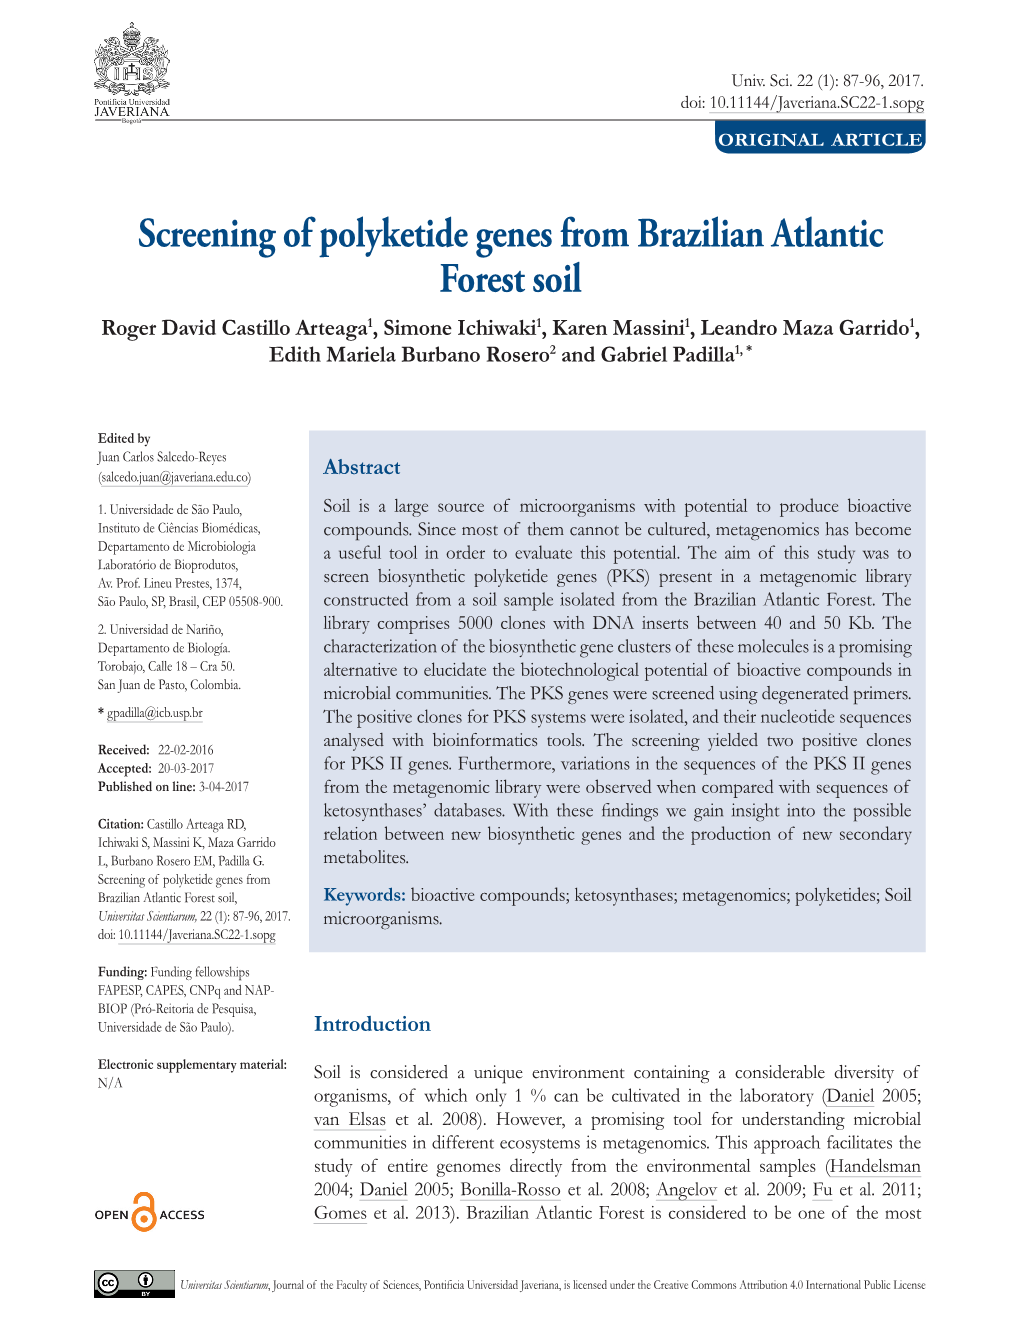 Screening of Polyketide Genes from Brazilian Atlantic Forest Soil